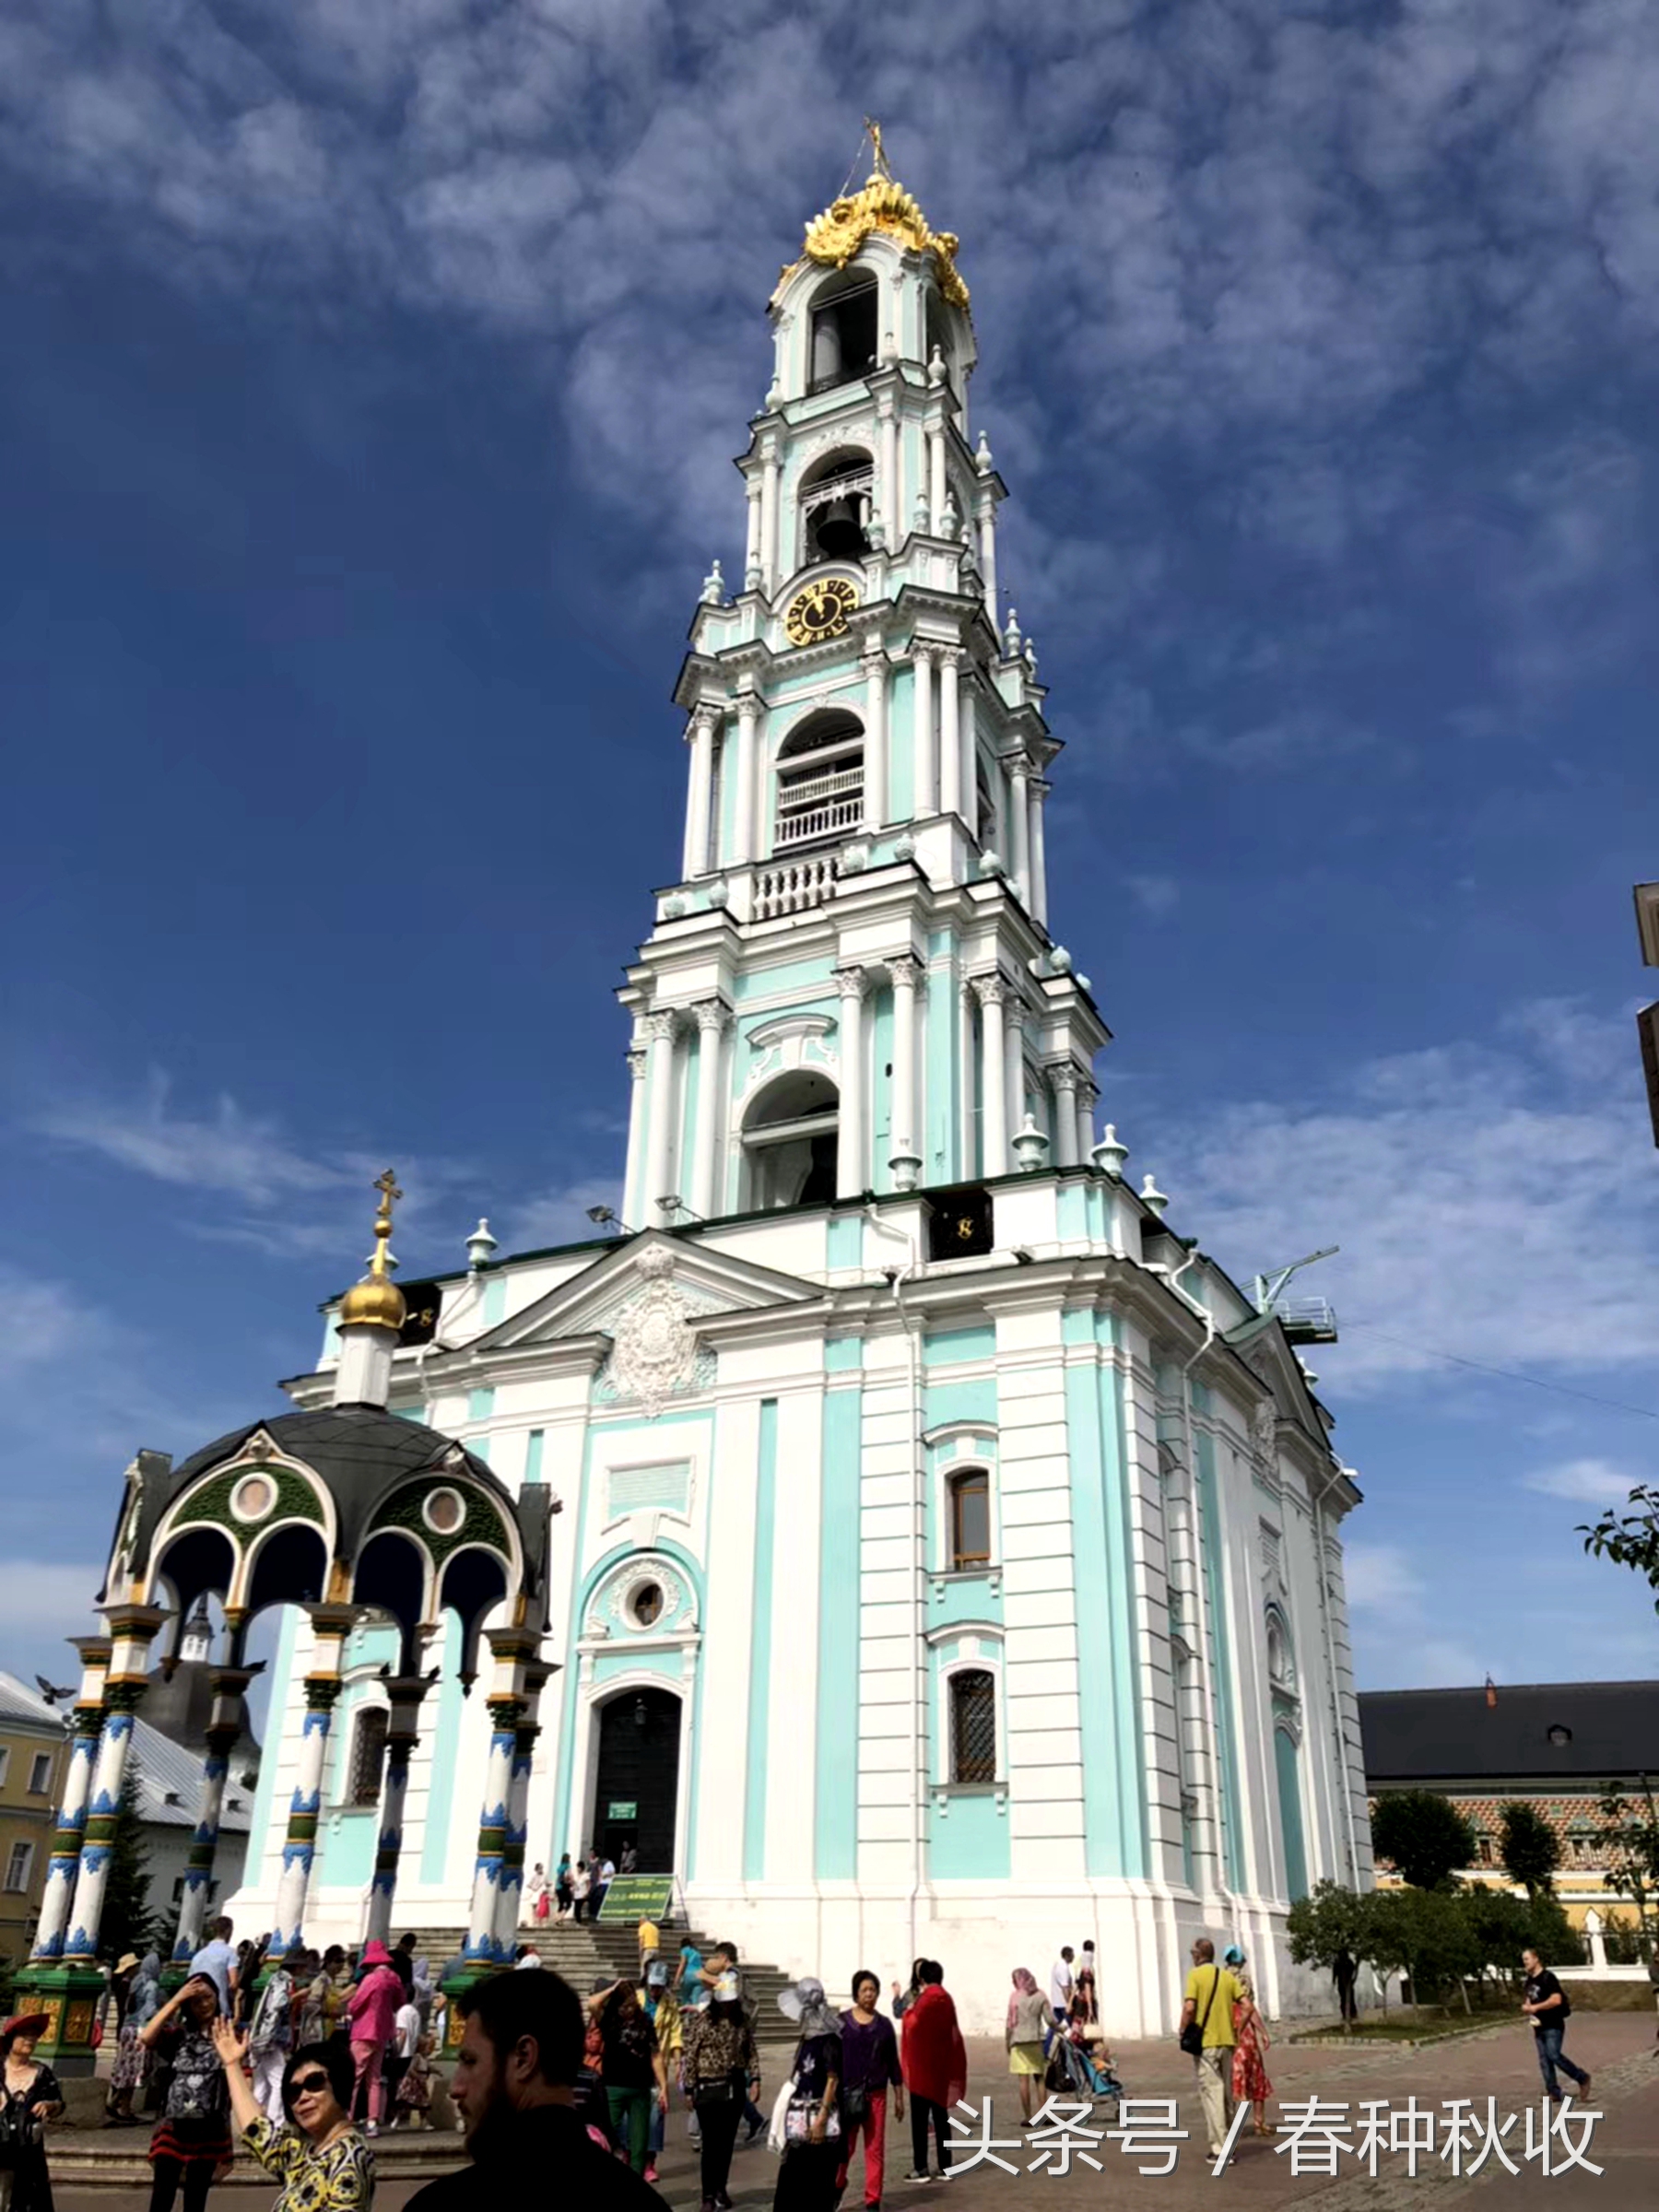 谢尔盖耶夫小镇是莫斯科乃至东欧最美的小镇！给人以心灵的震撼